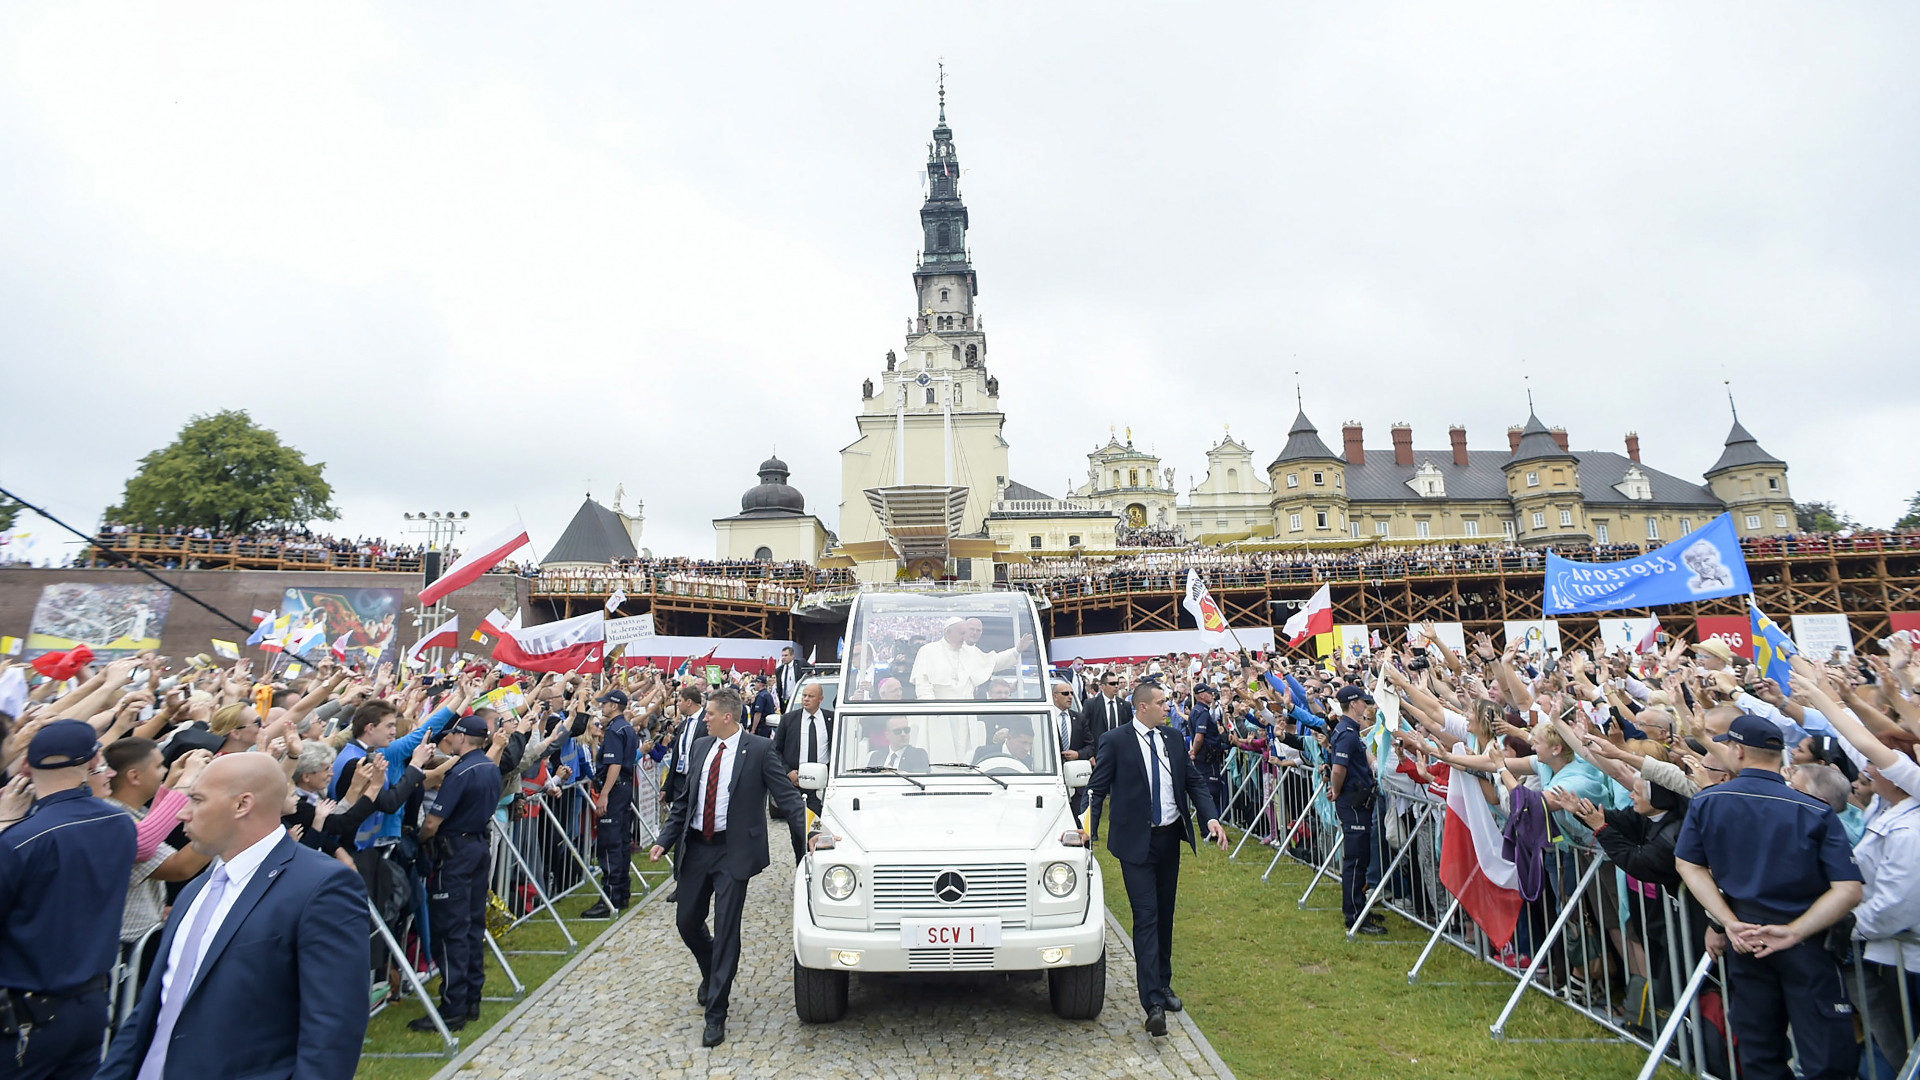 Polen ist ein tief katholisches Land. Gläubige jubeln Papst Franziskus beim Besuch im Paulinerkloster in Tschenstochau zu.